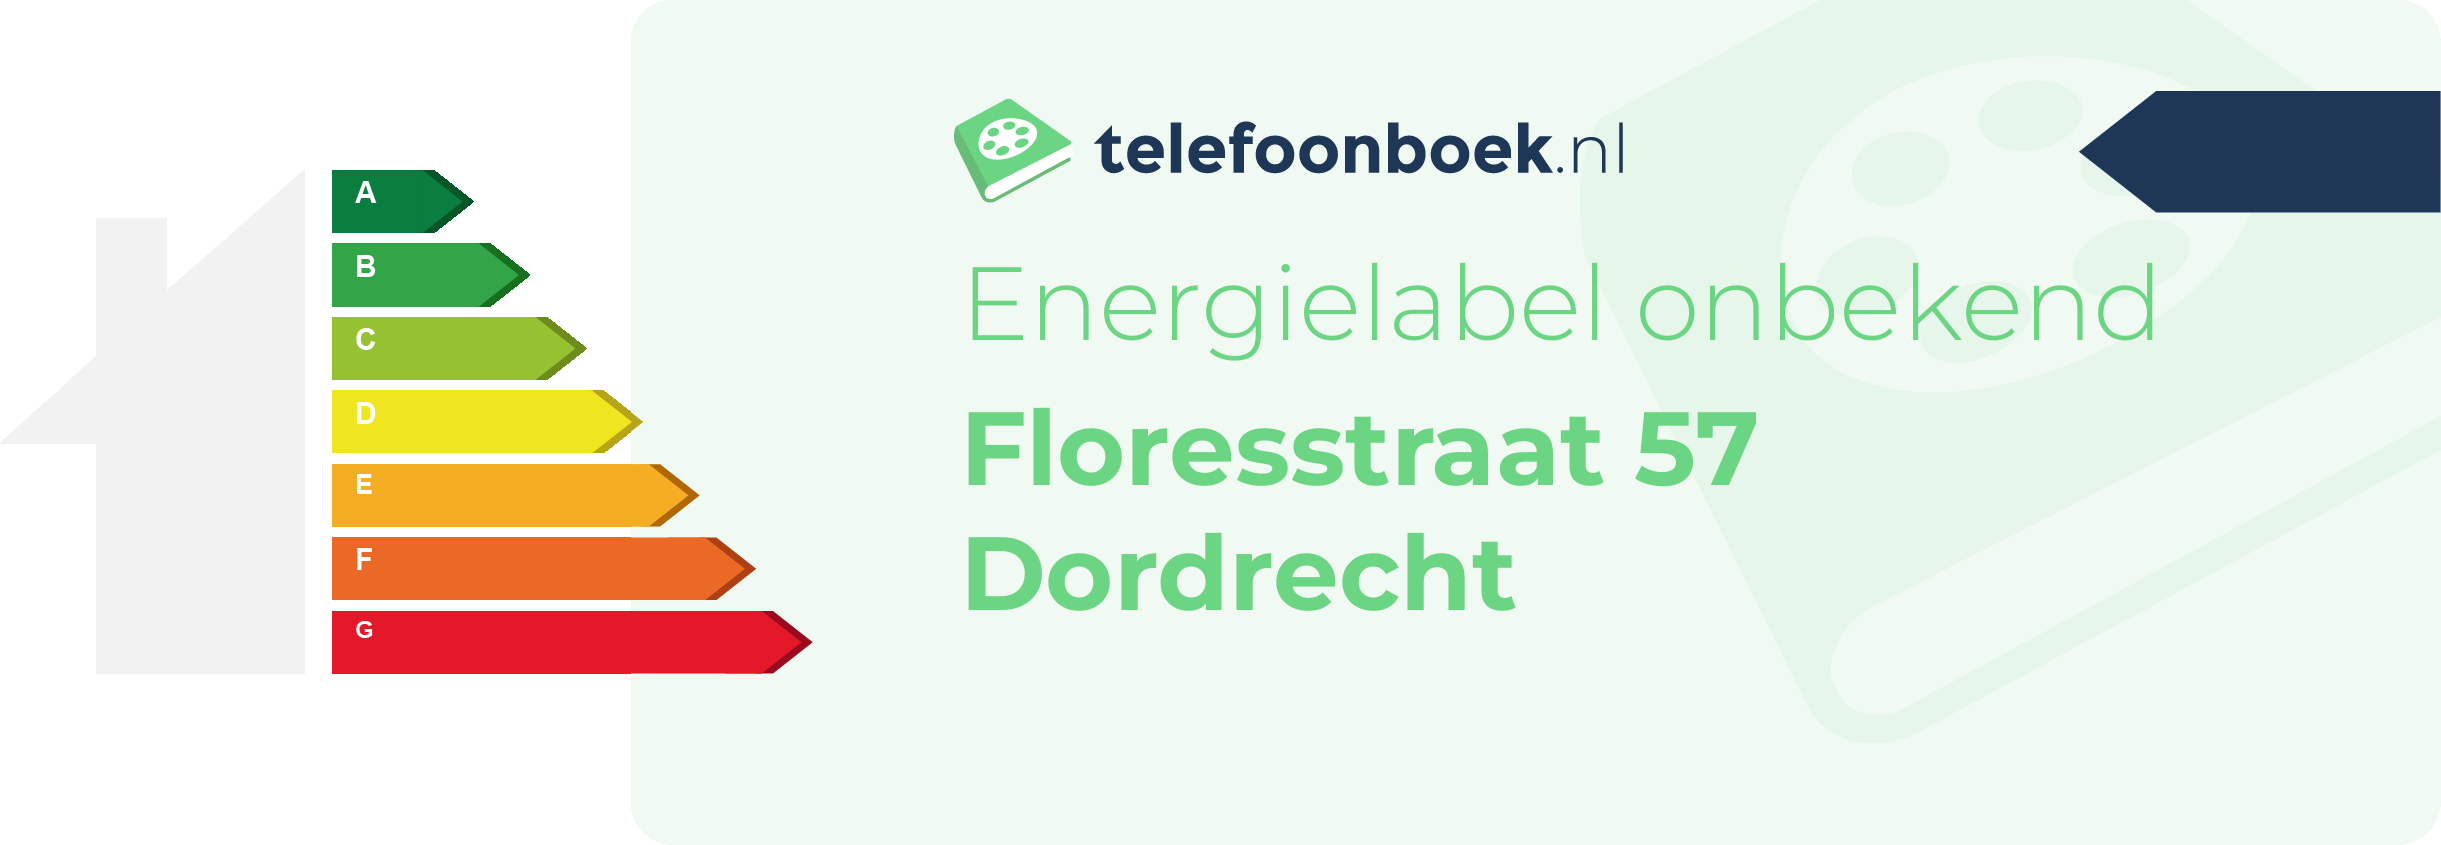 Energielabel Floresstraat 57 Dordrecht